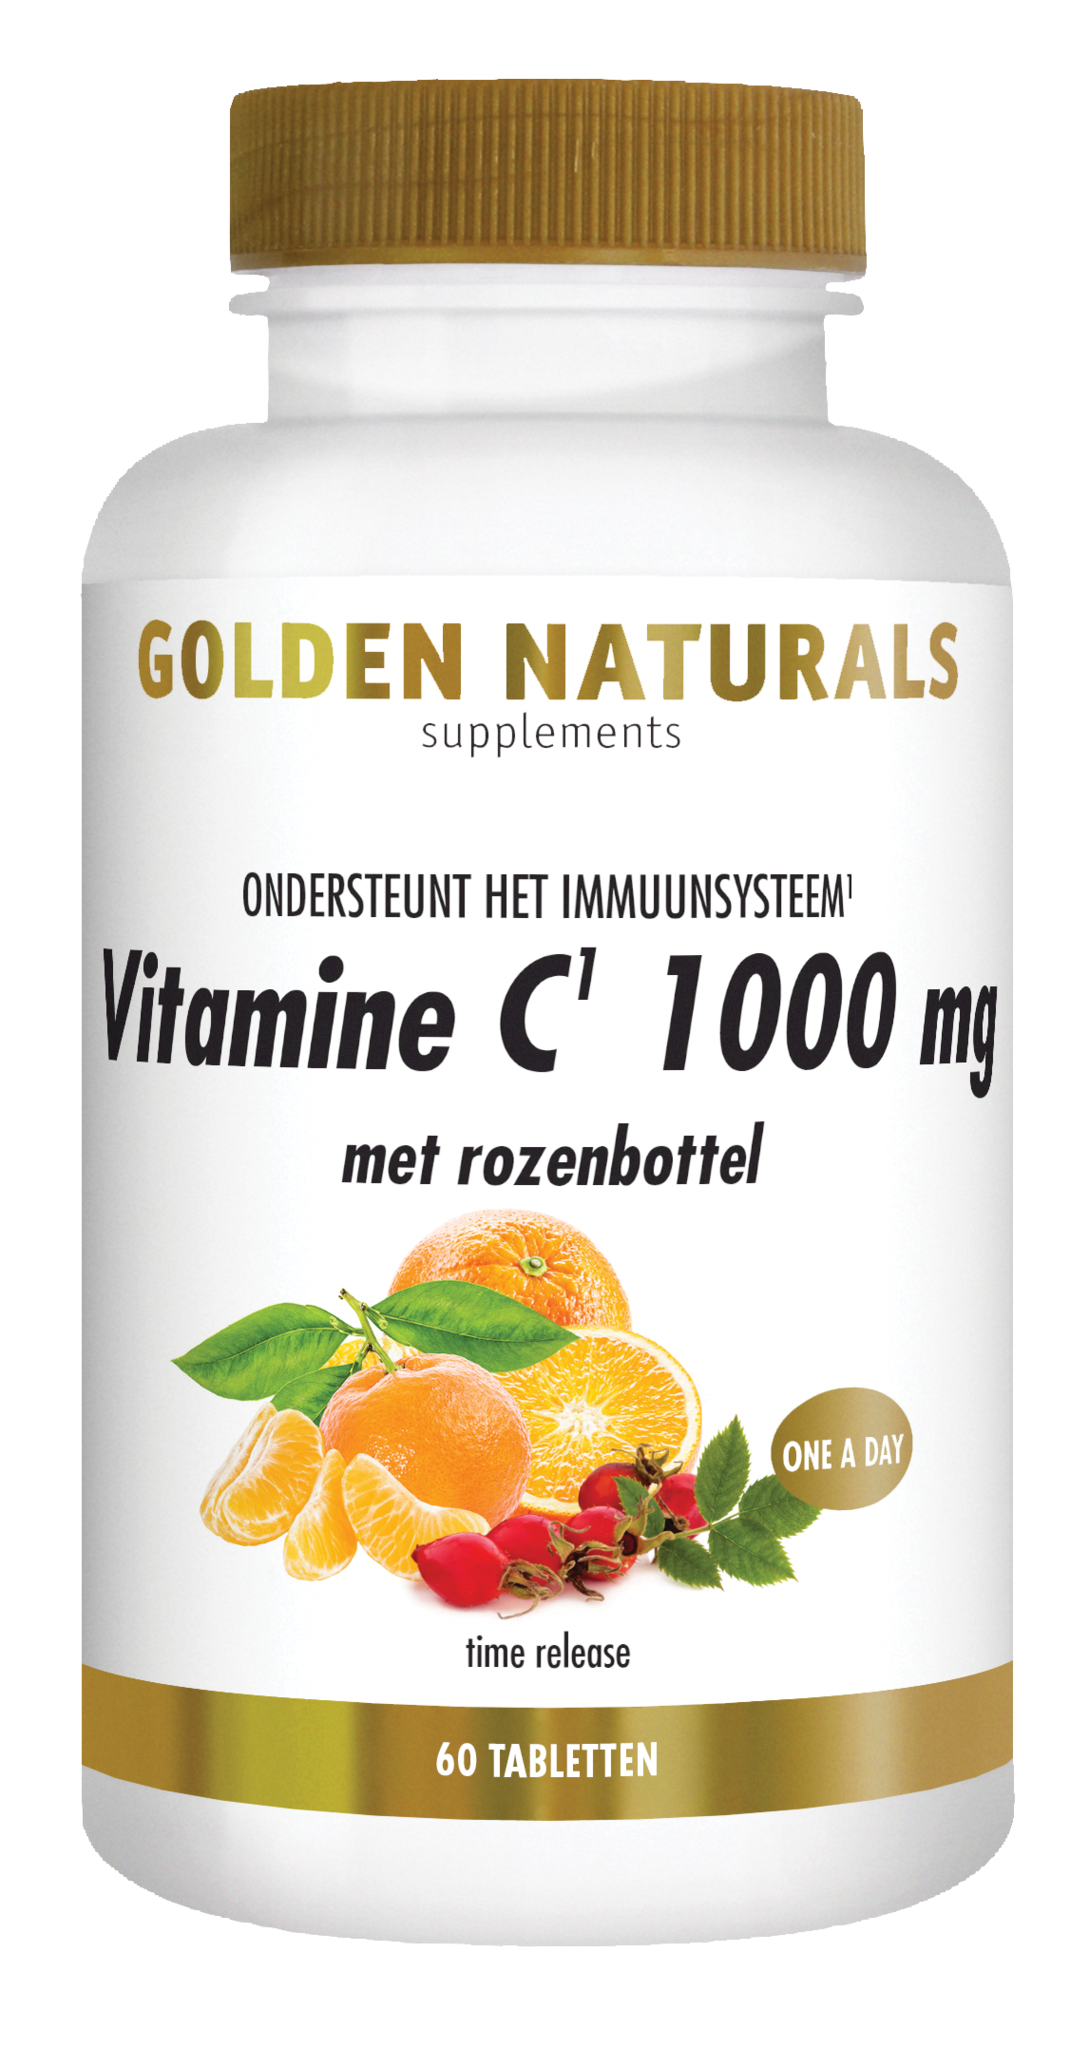 Golden Naturals Golden Naturals Vitamine C 1000 mg met rozenbottel